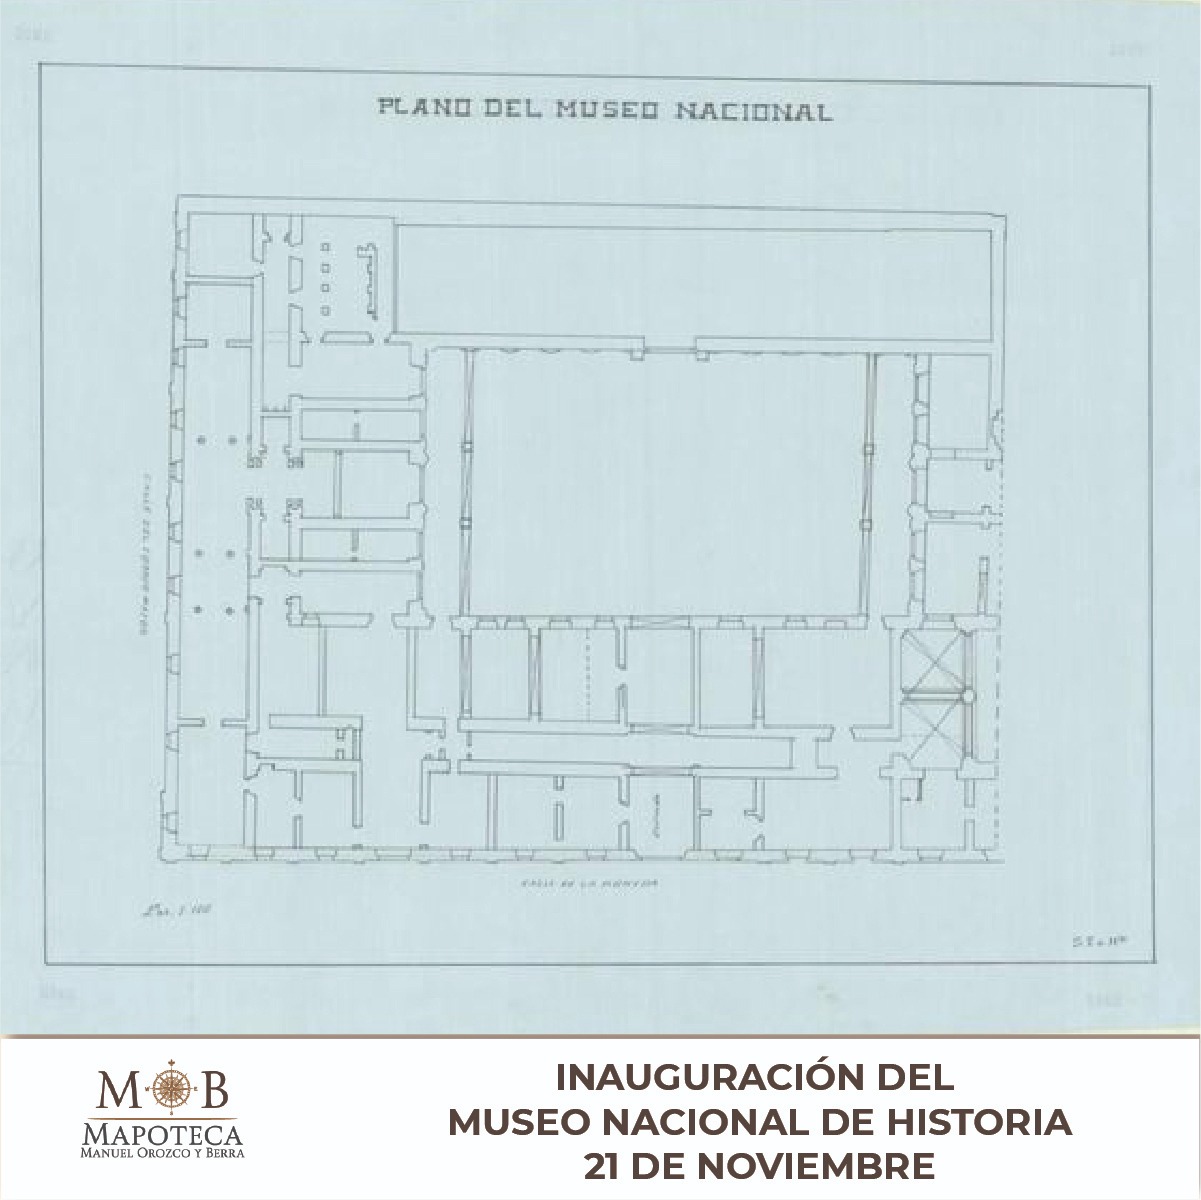 Para conmemorar un año más de la inauguración del observatorio Museo Nacional de Historia, la Mapoteca Manuel Orozco y Berra presenta esta imagen titulada: “Plano del Museo Nacional”.